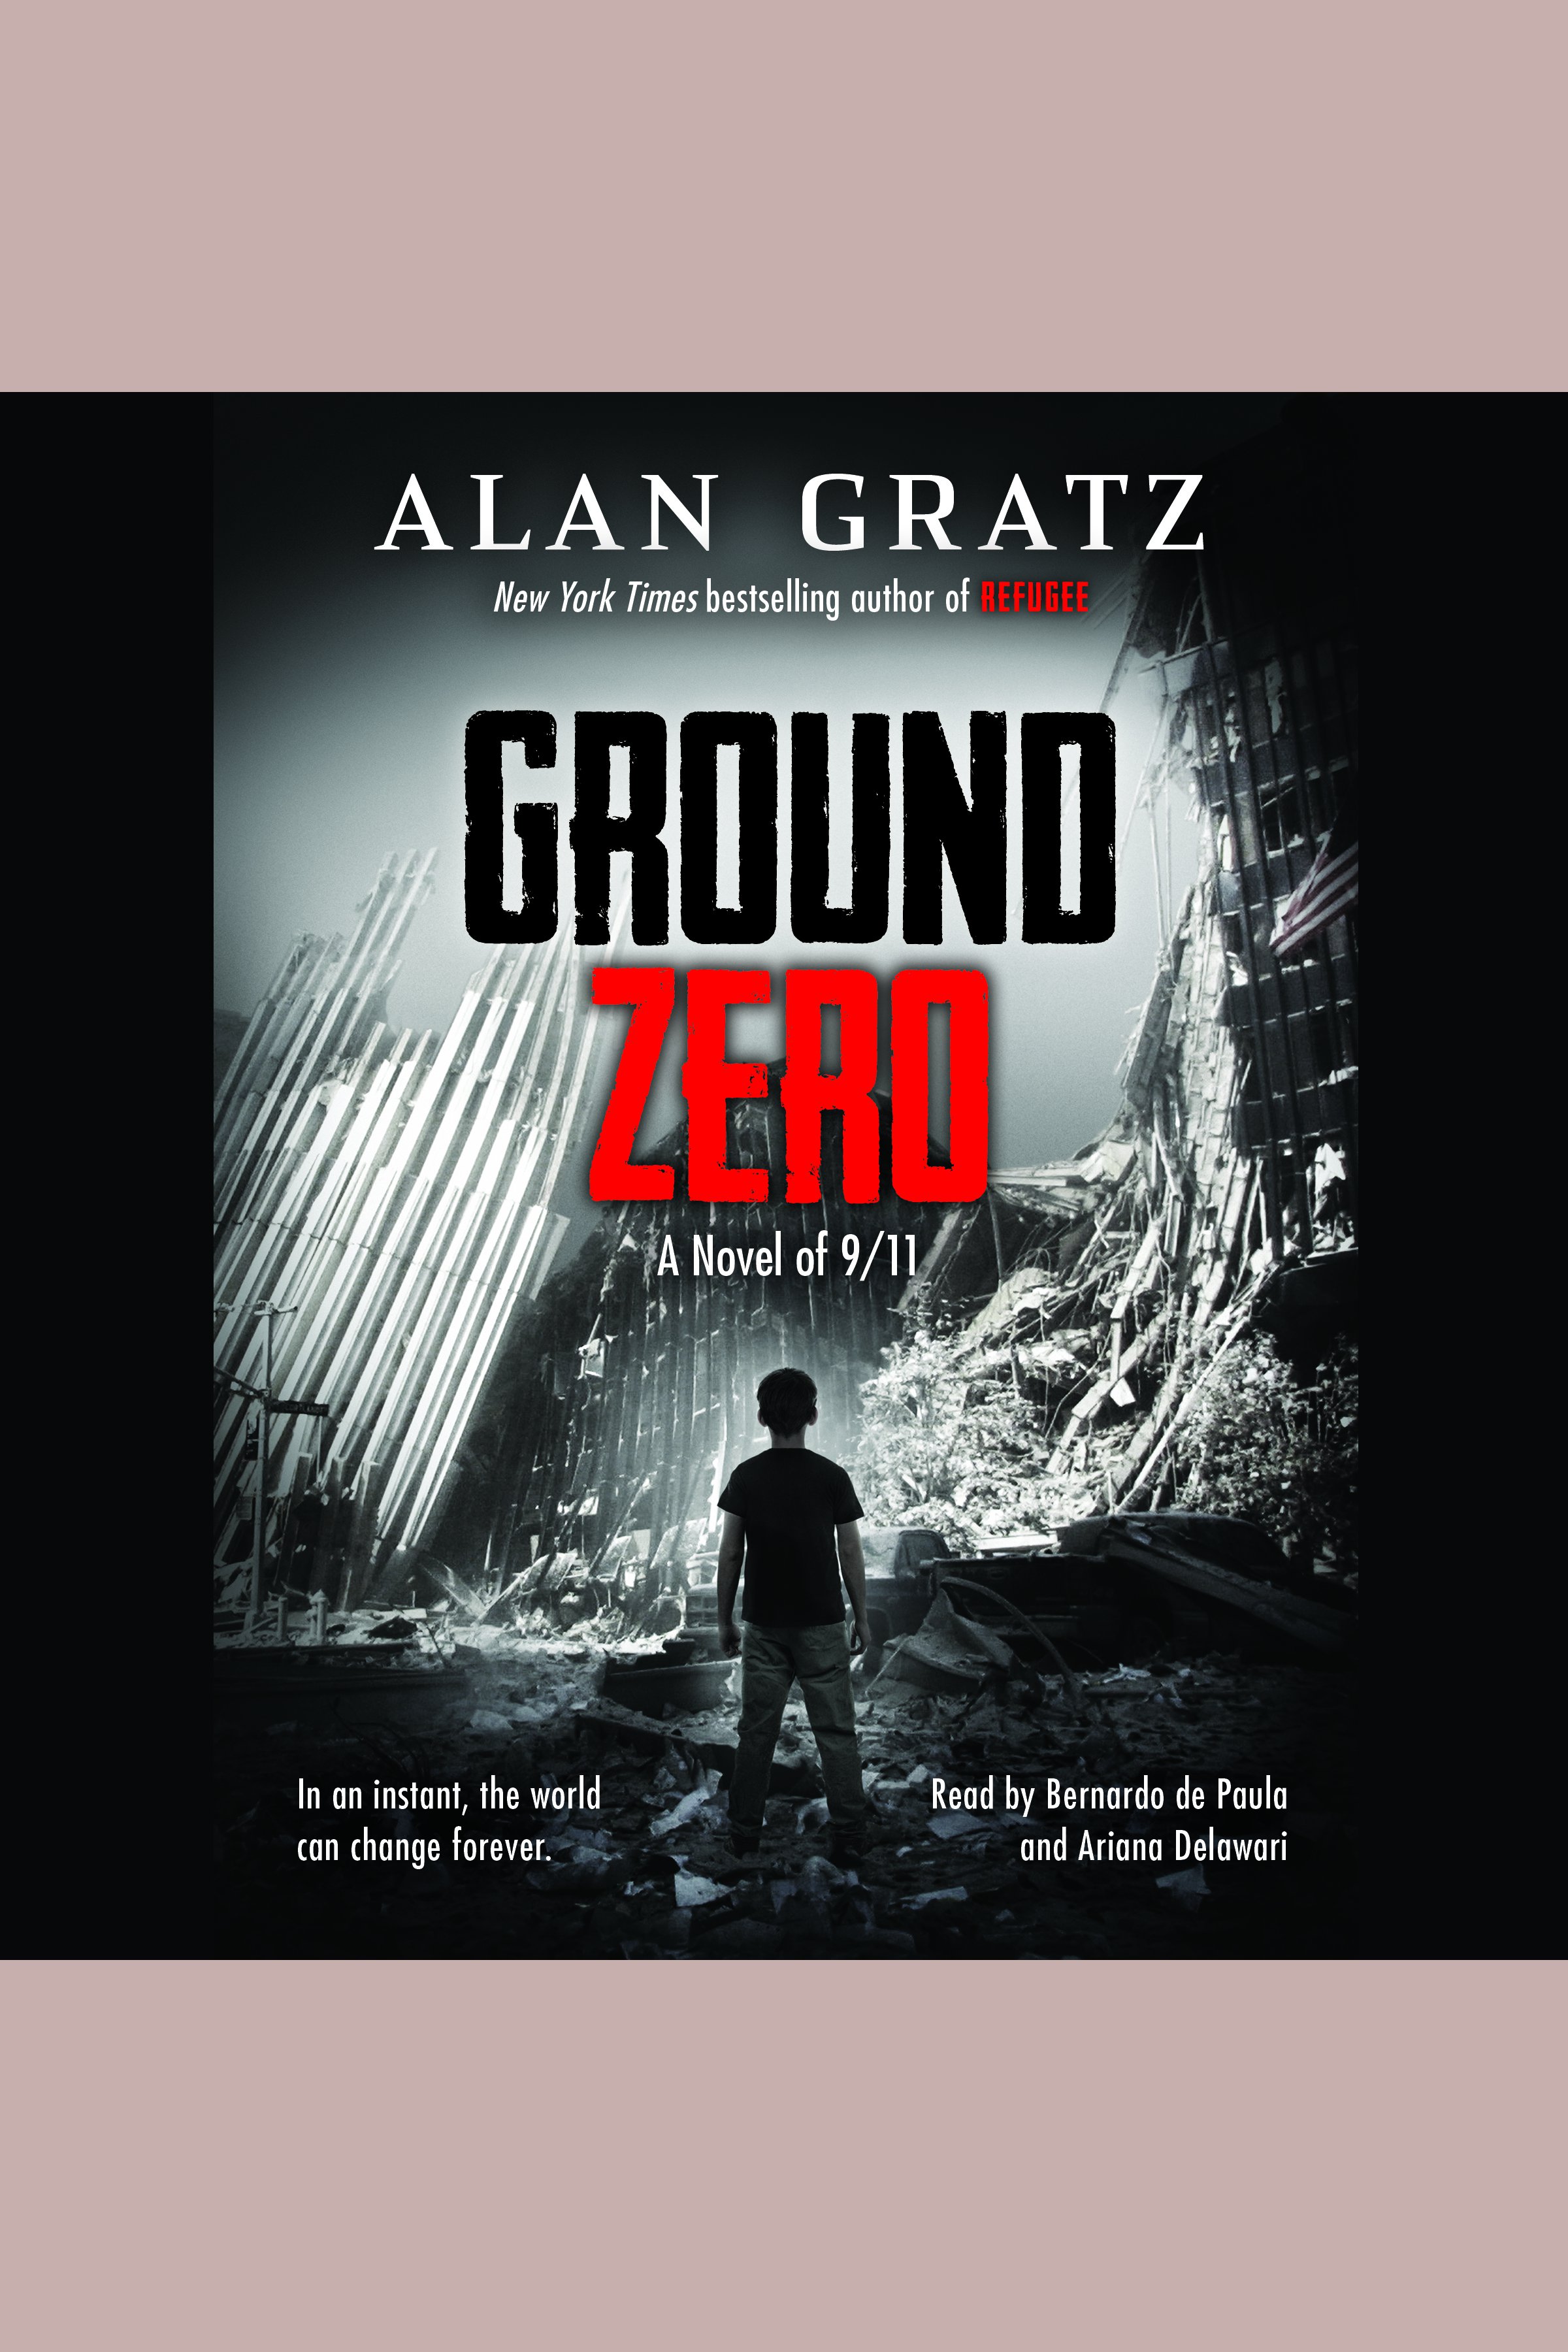 Ground Zero cover image